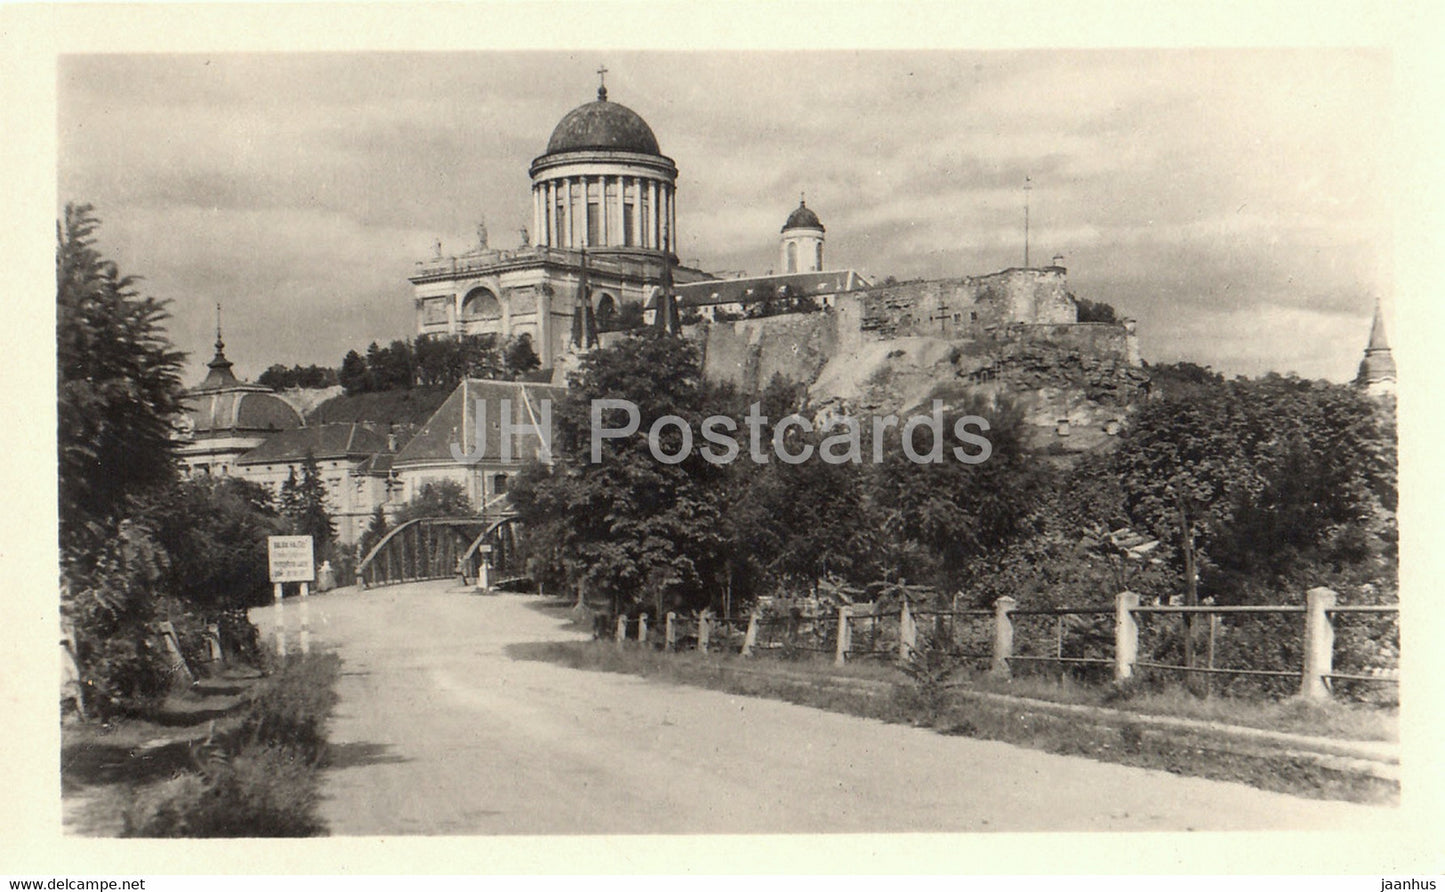 Esztergom - Udvozlet Esztergombol - old postcard - Hungary - unused - JH Postcards